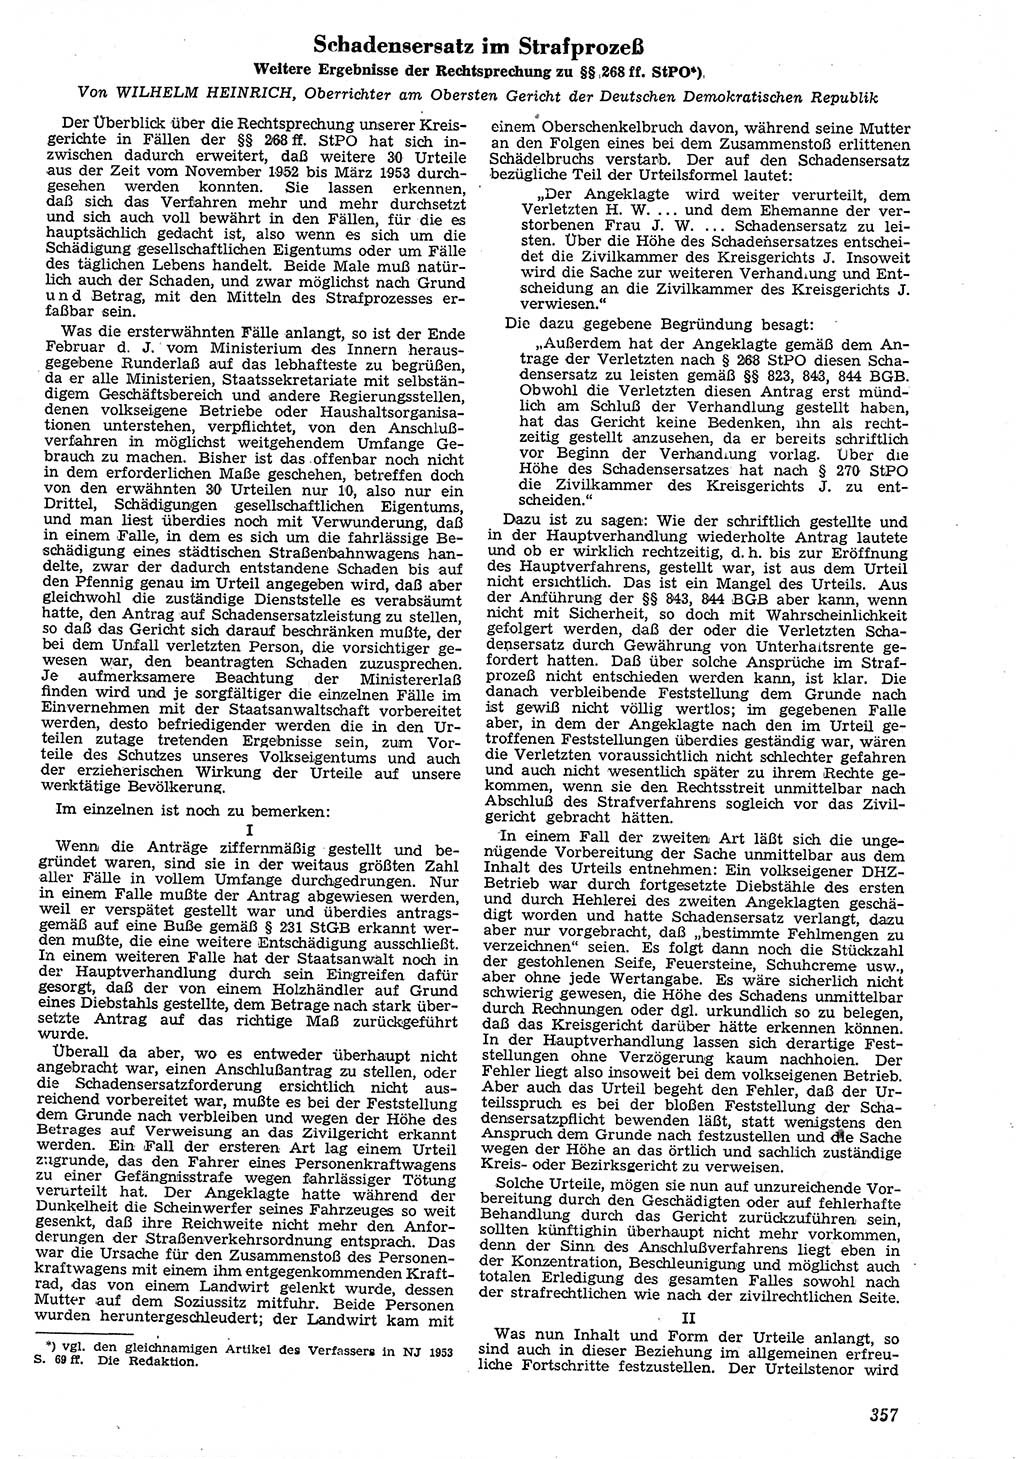 Neue Justiz (NJ), Zeitschrift für Recht und Rechtswissenschaft [Deutsche Demokratische Republik (DDR)], 7. Jahrgang 1953, Seite 357 (NJ DDR 1953, S. 357)